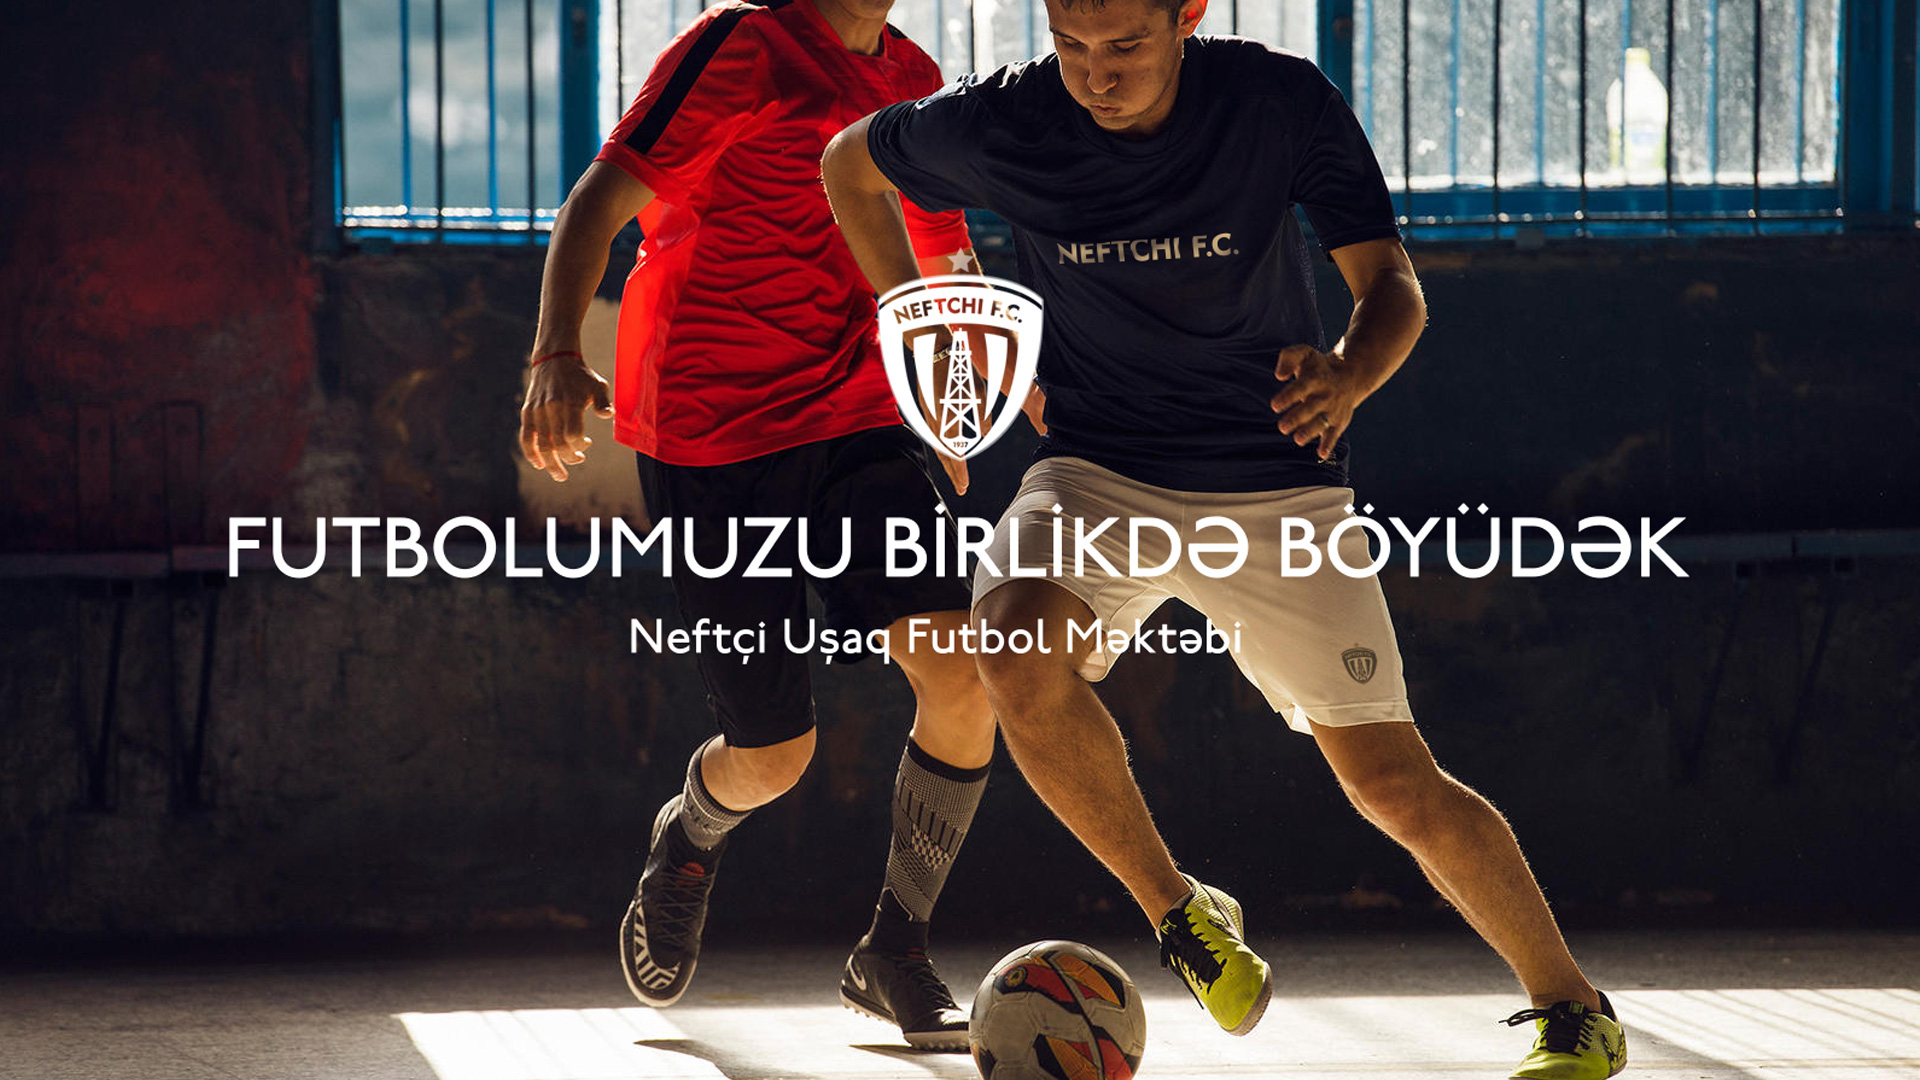 NEW! Scarf PFC Neftchi Neckerchief Neftchi Football Club Azerbaijan 